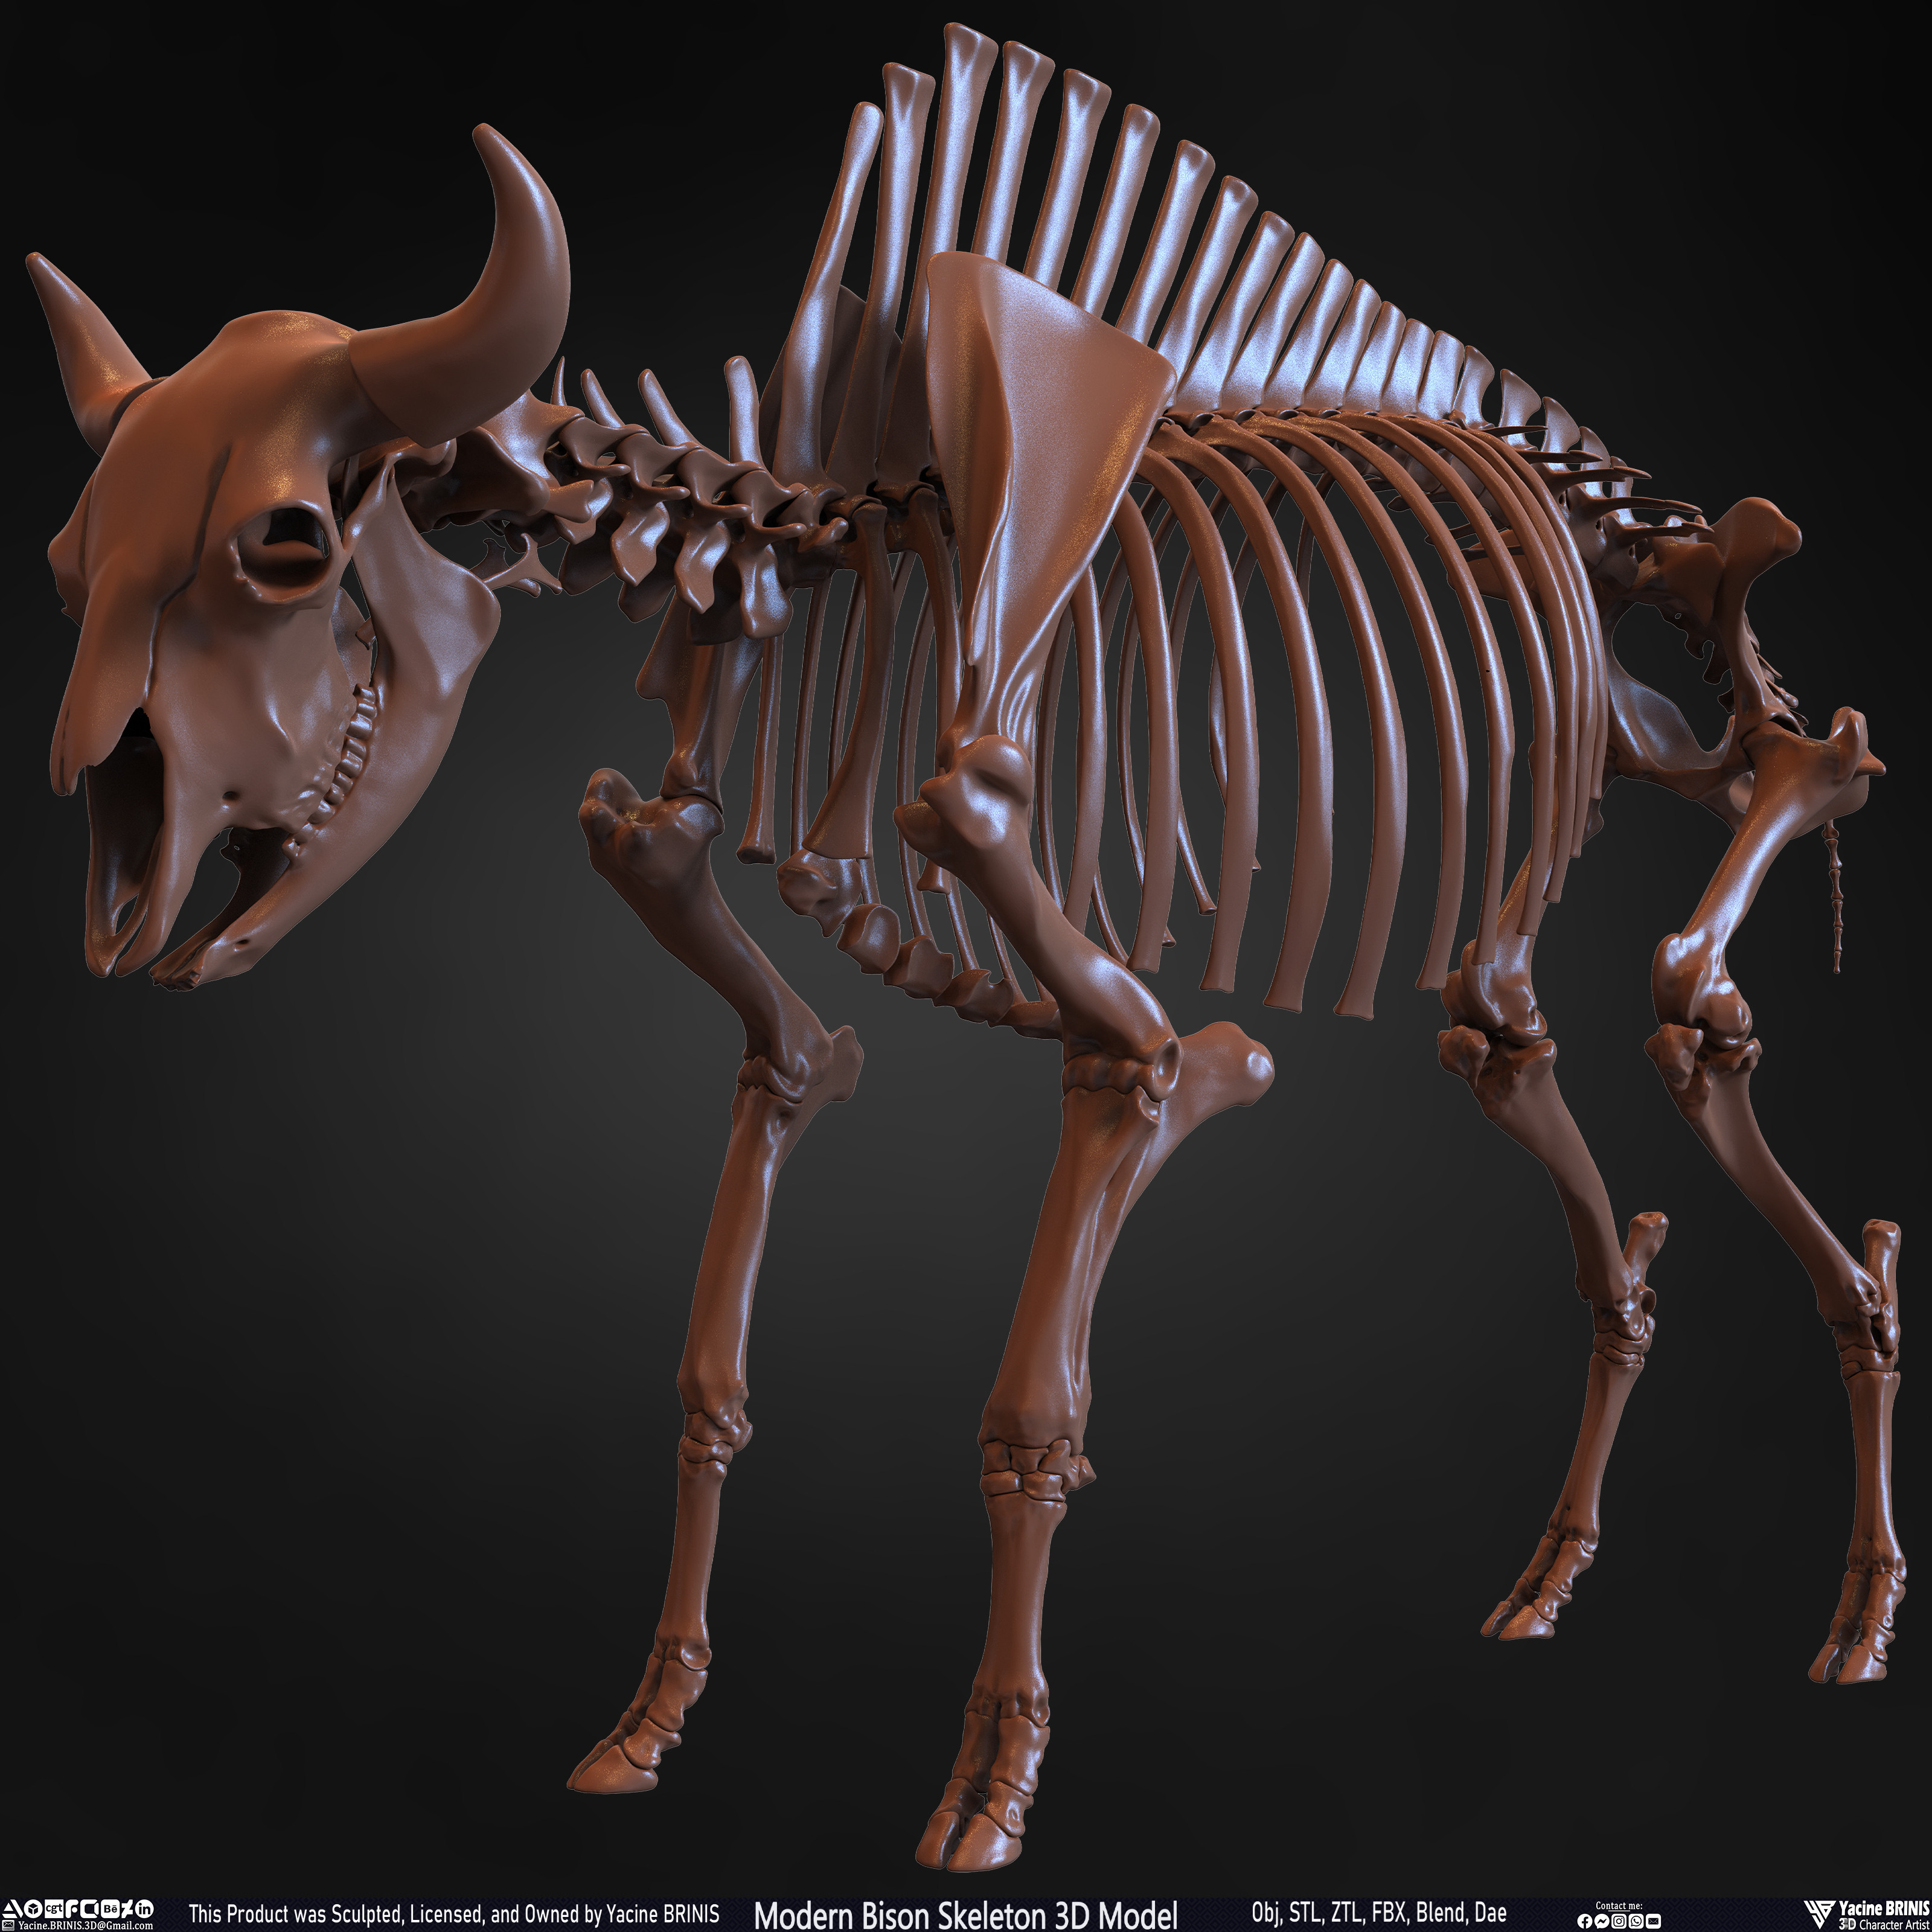 Modern Bison Skeleton 3D Model Sculpted by Yacine BRINIS Set 014